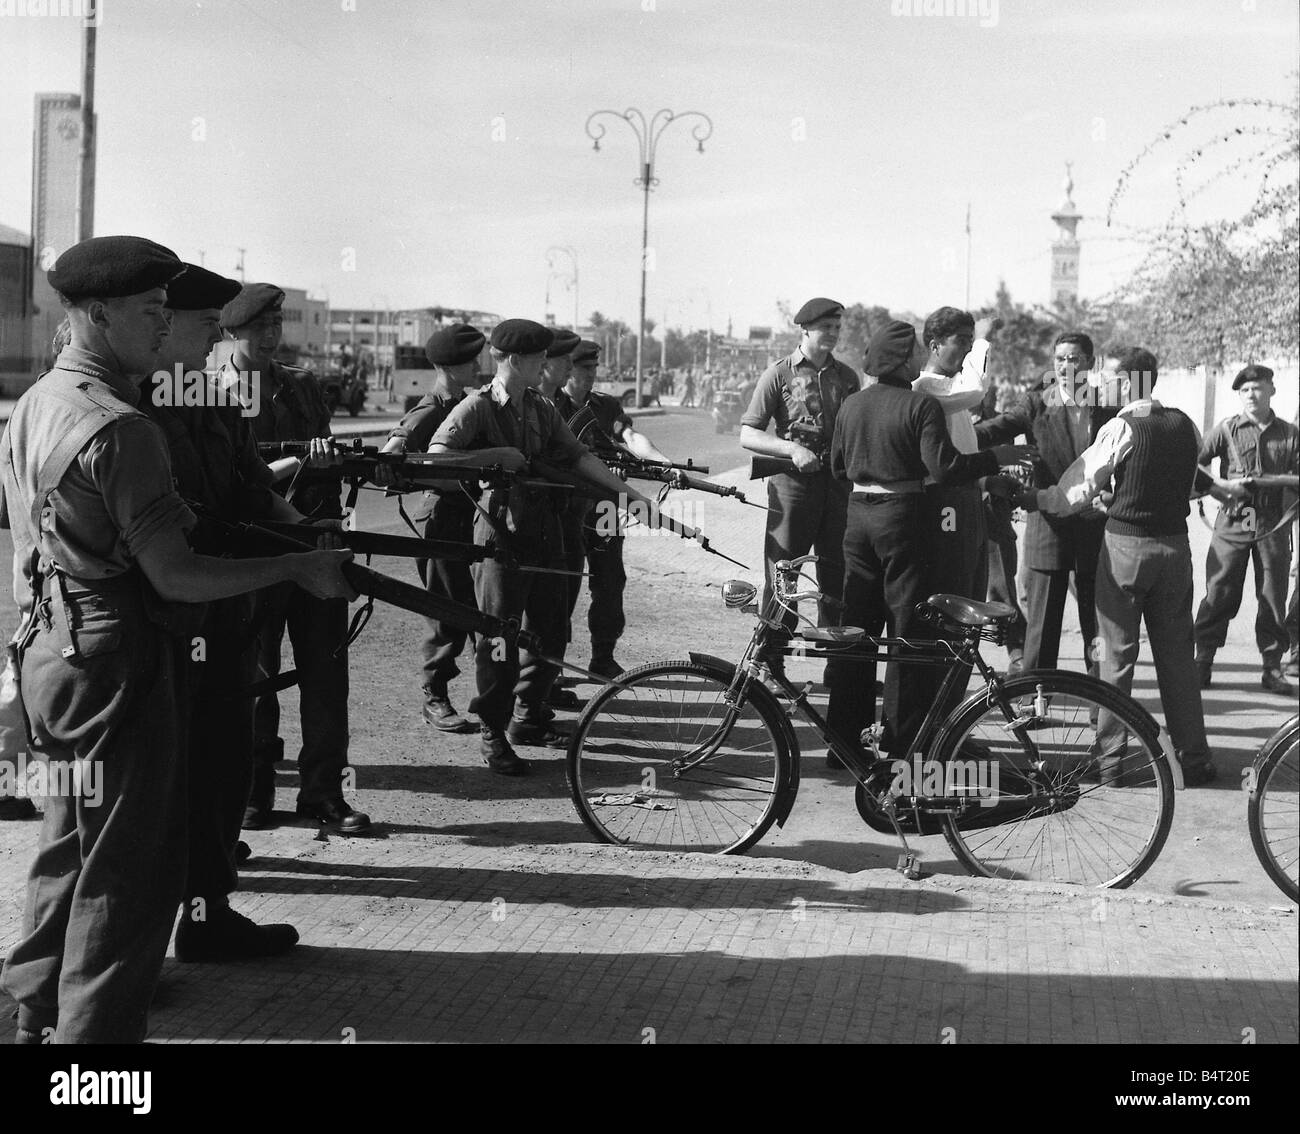 الجنرال ستوكويل يصدر اوامرة بمنع استعمال الدراجات في بورسعيد  والقاء القبض علي كل من يستعمل دراجة Suez-crisis-1956-british-soldiers-keep-rotesting-egyptians-back-as-B4T20E